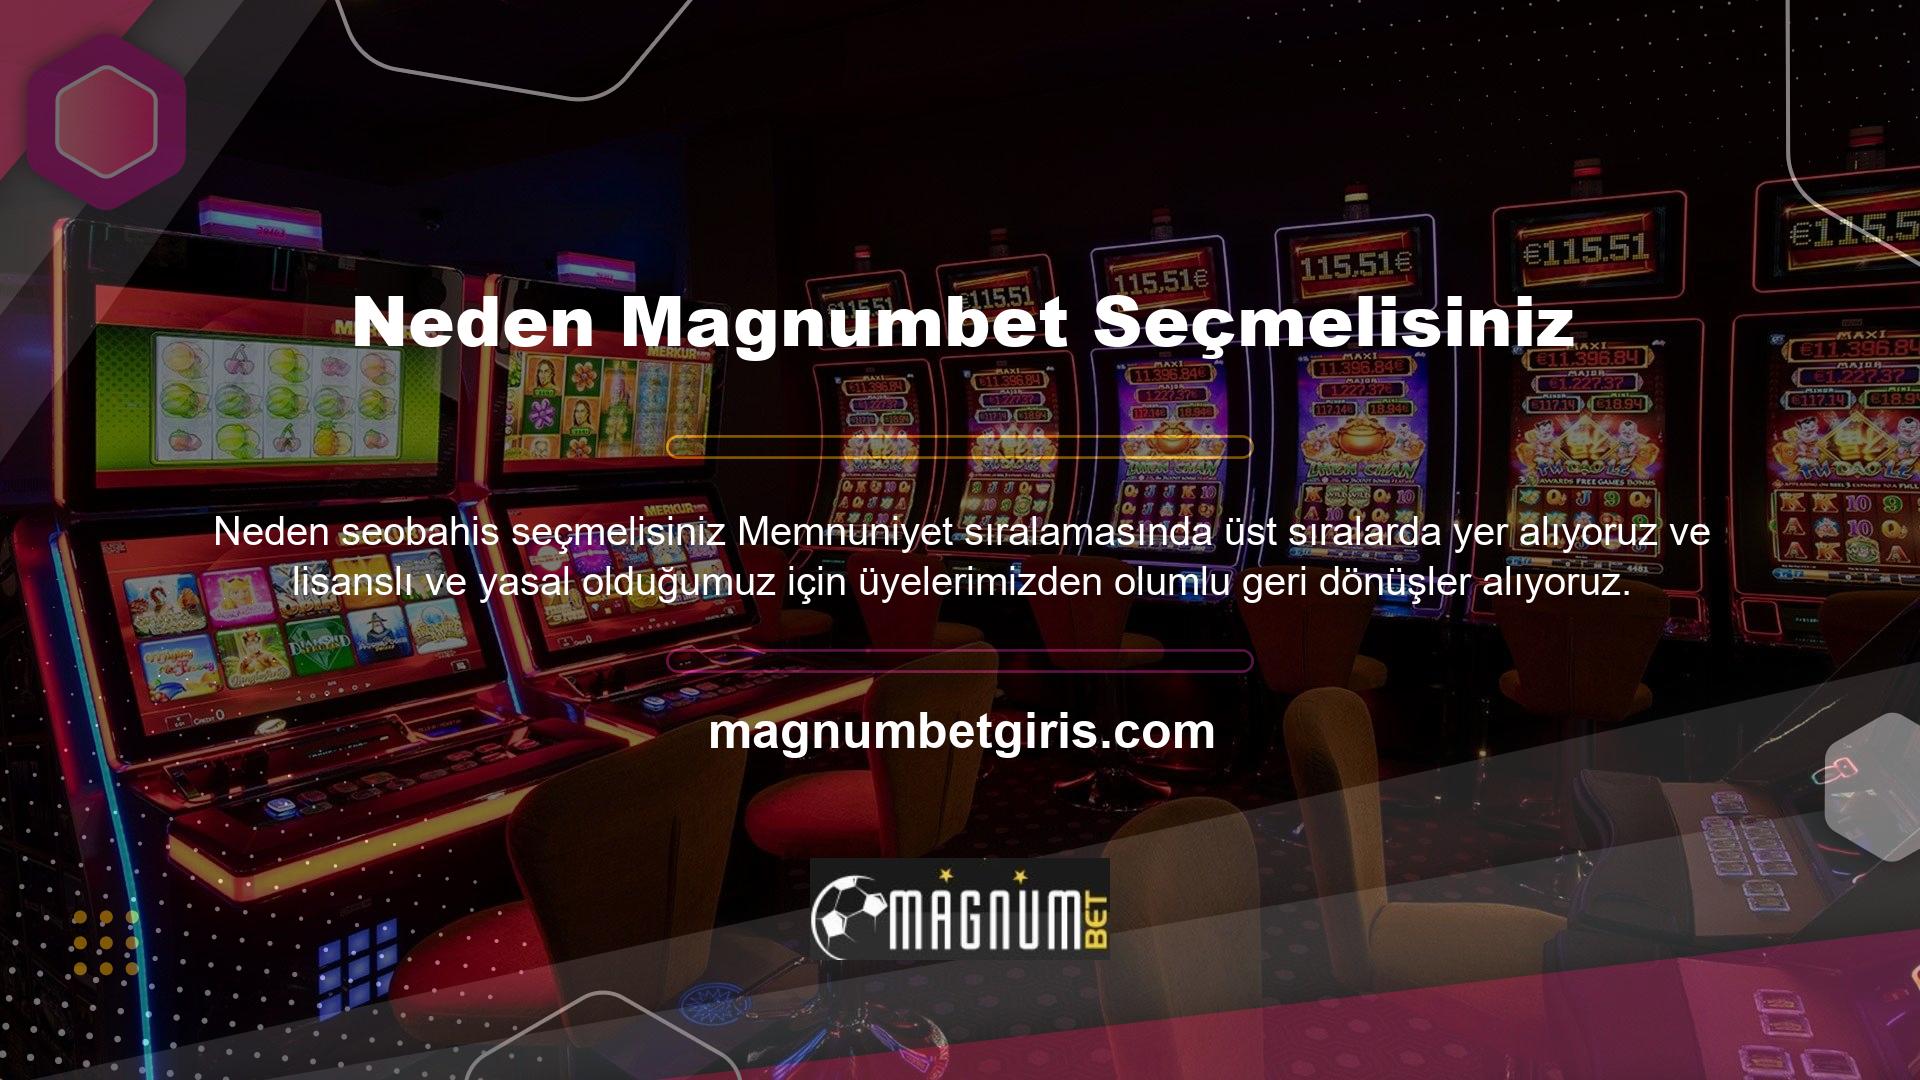 Magnumbet lisanslanmıştır ve kullanıcılarının güvenini kazanarak güvenilir bahis sitelerinden biri haline gelmiştir